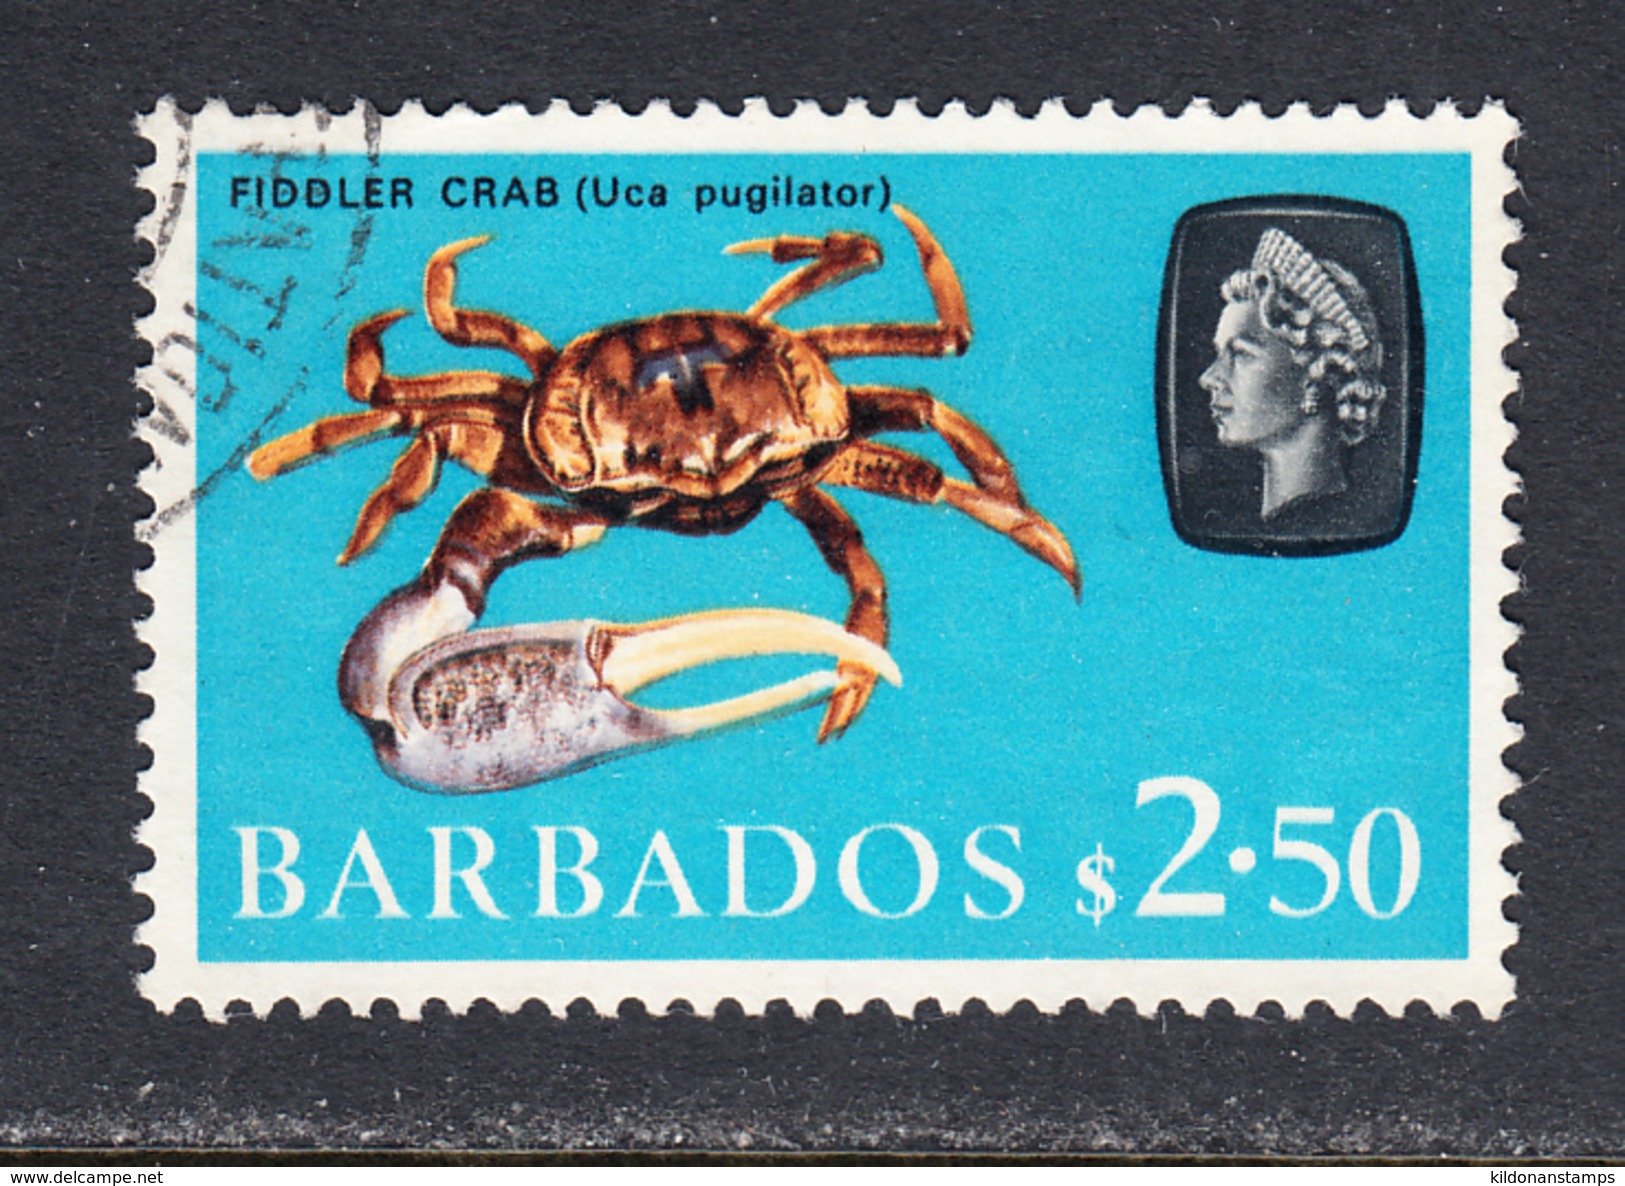 Barbados 1966-69 Cancelled, Wmk 12 Sideways, Sc# 280 , SG 355 - Barbados (1966-...)